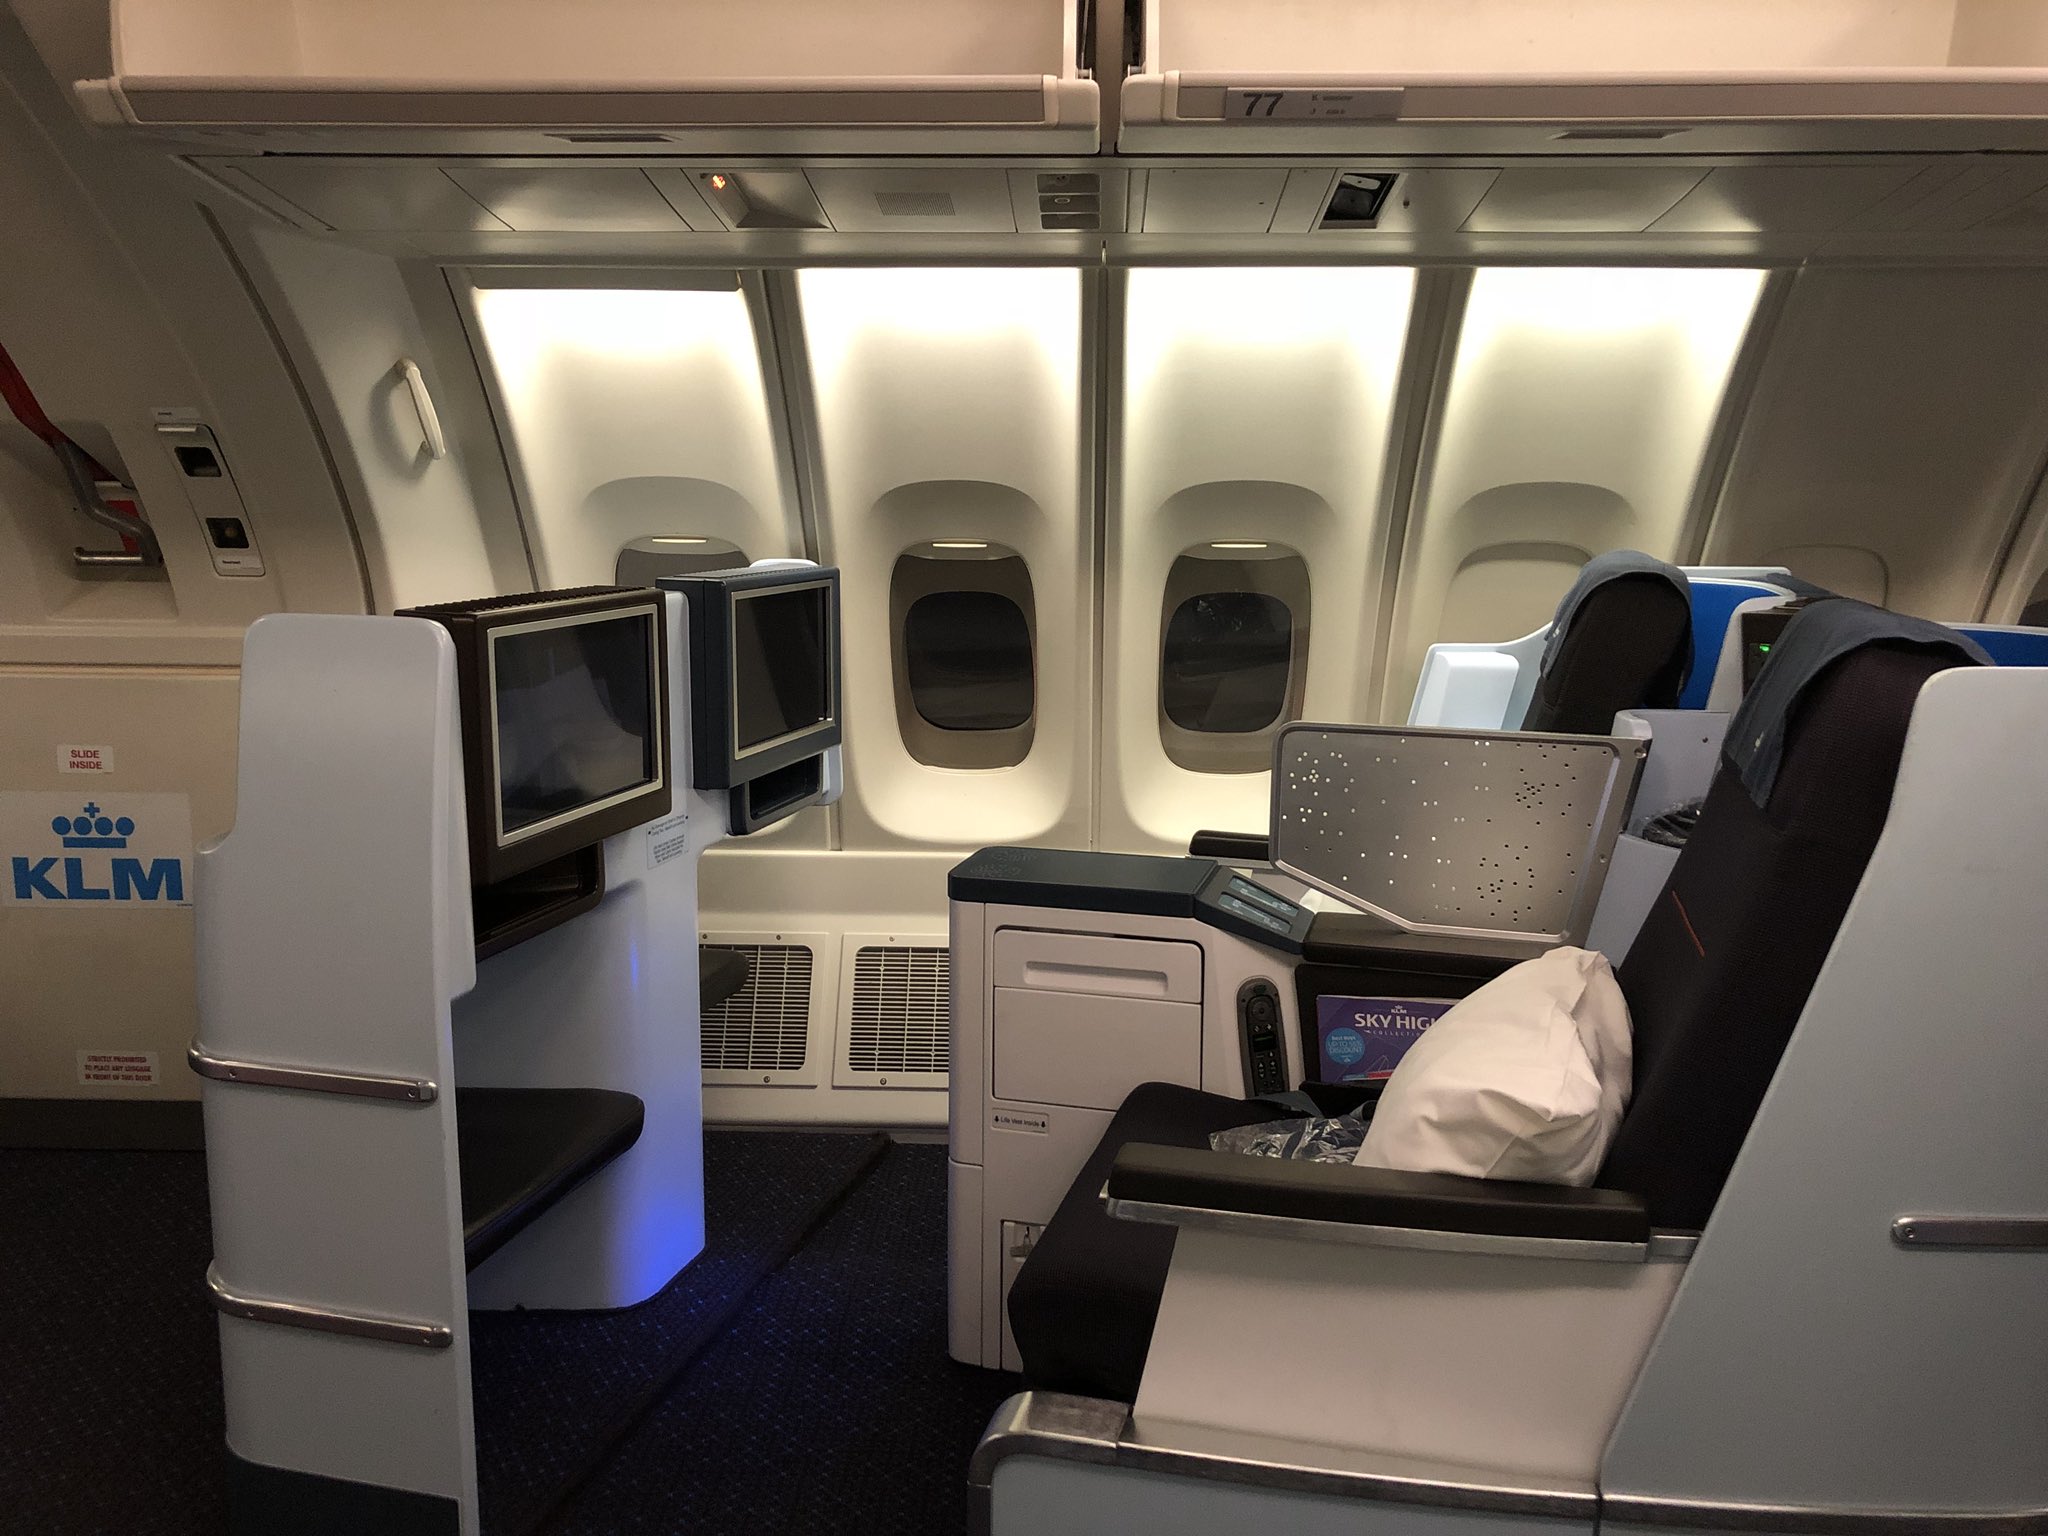 Maxim Vos Twitterren: "KLM World Business Class in the Boeing 747-400 ...